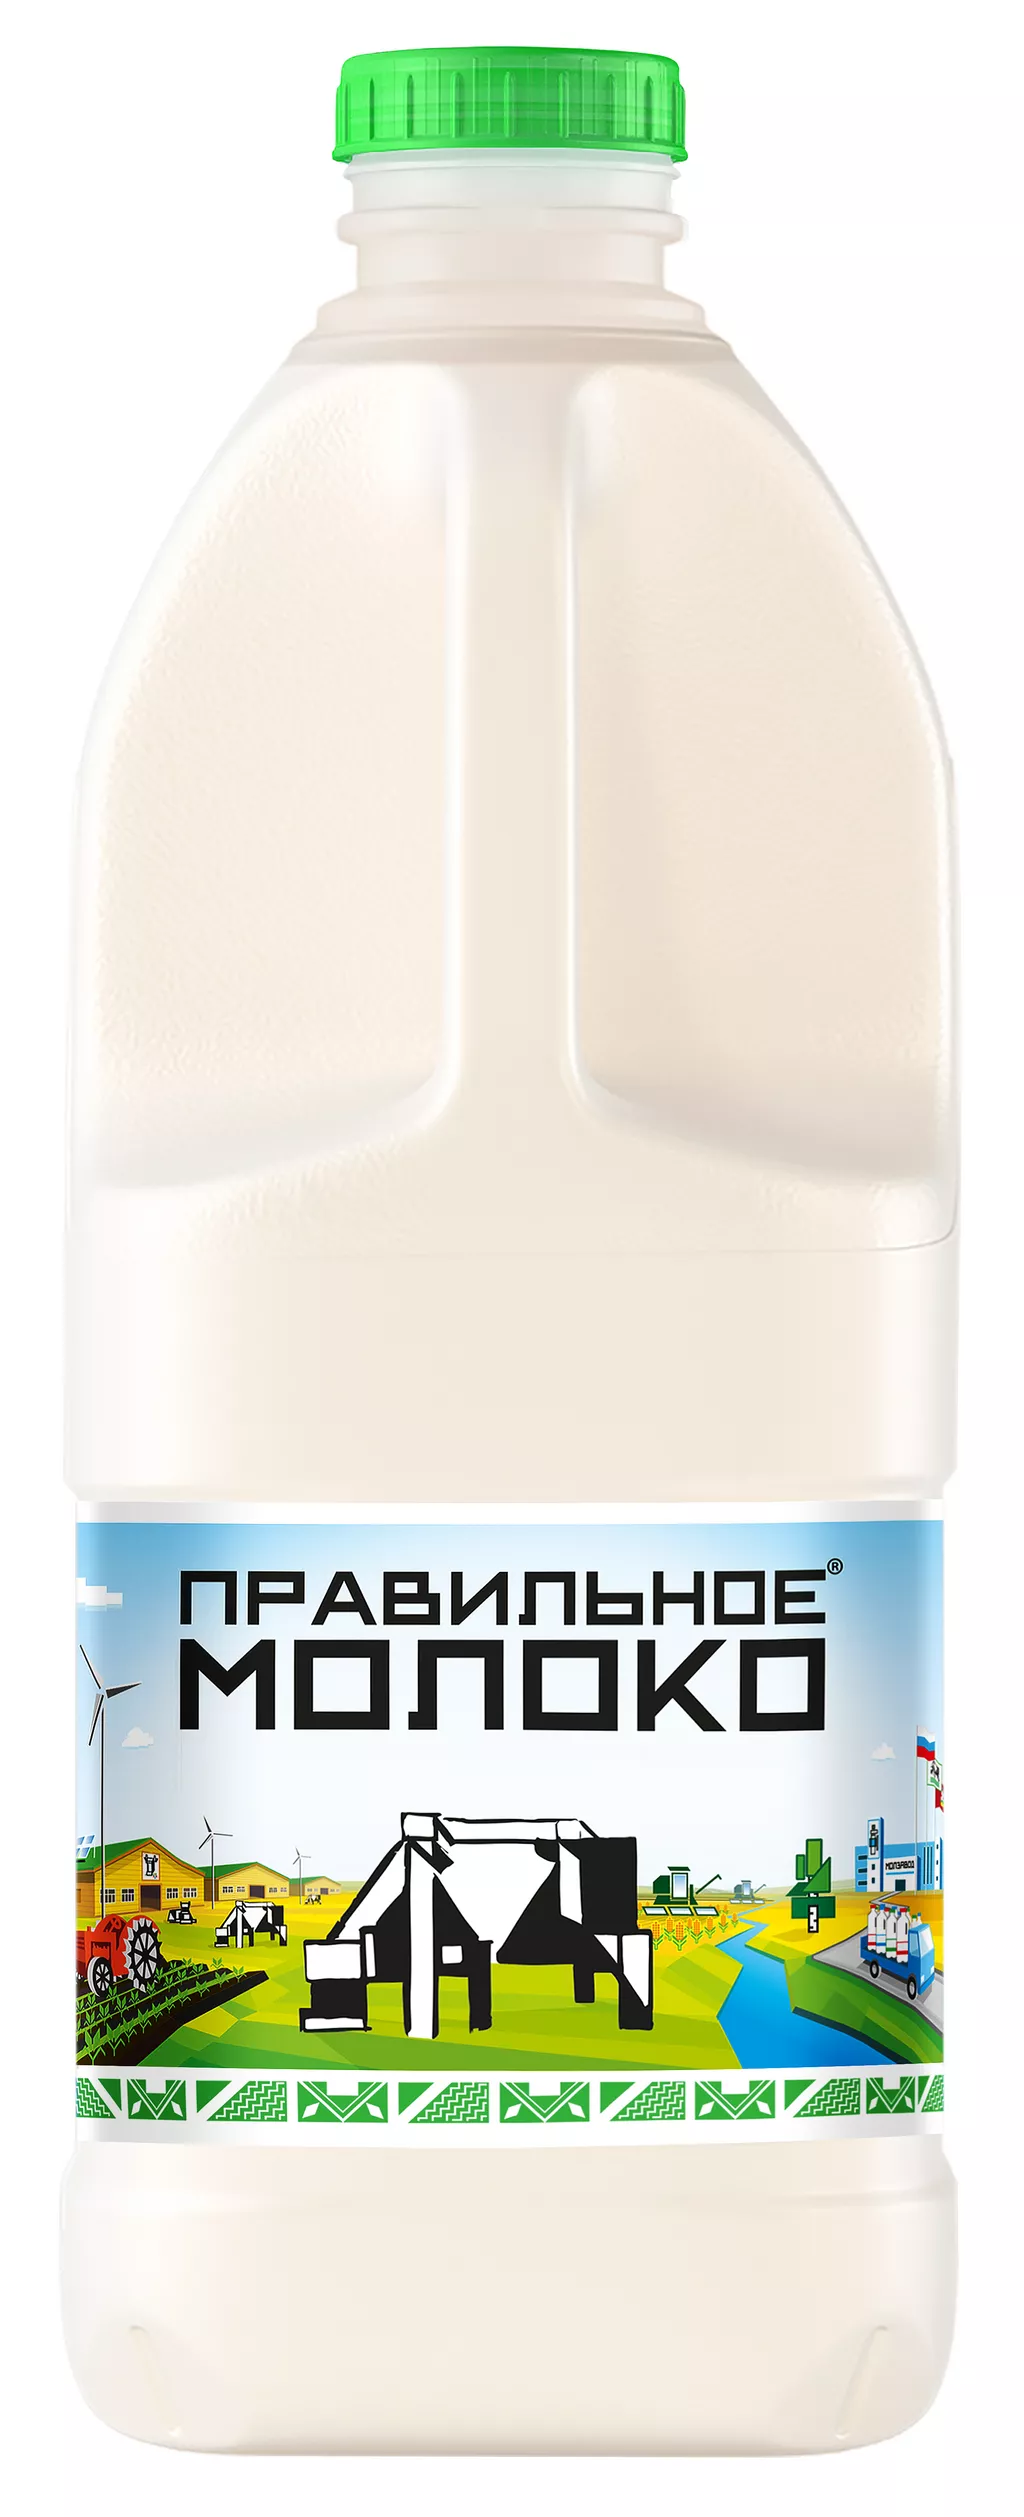 фотография продукта Правильное молоко 2,5%